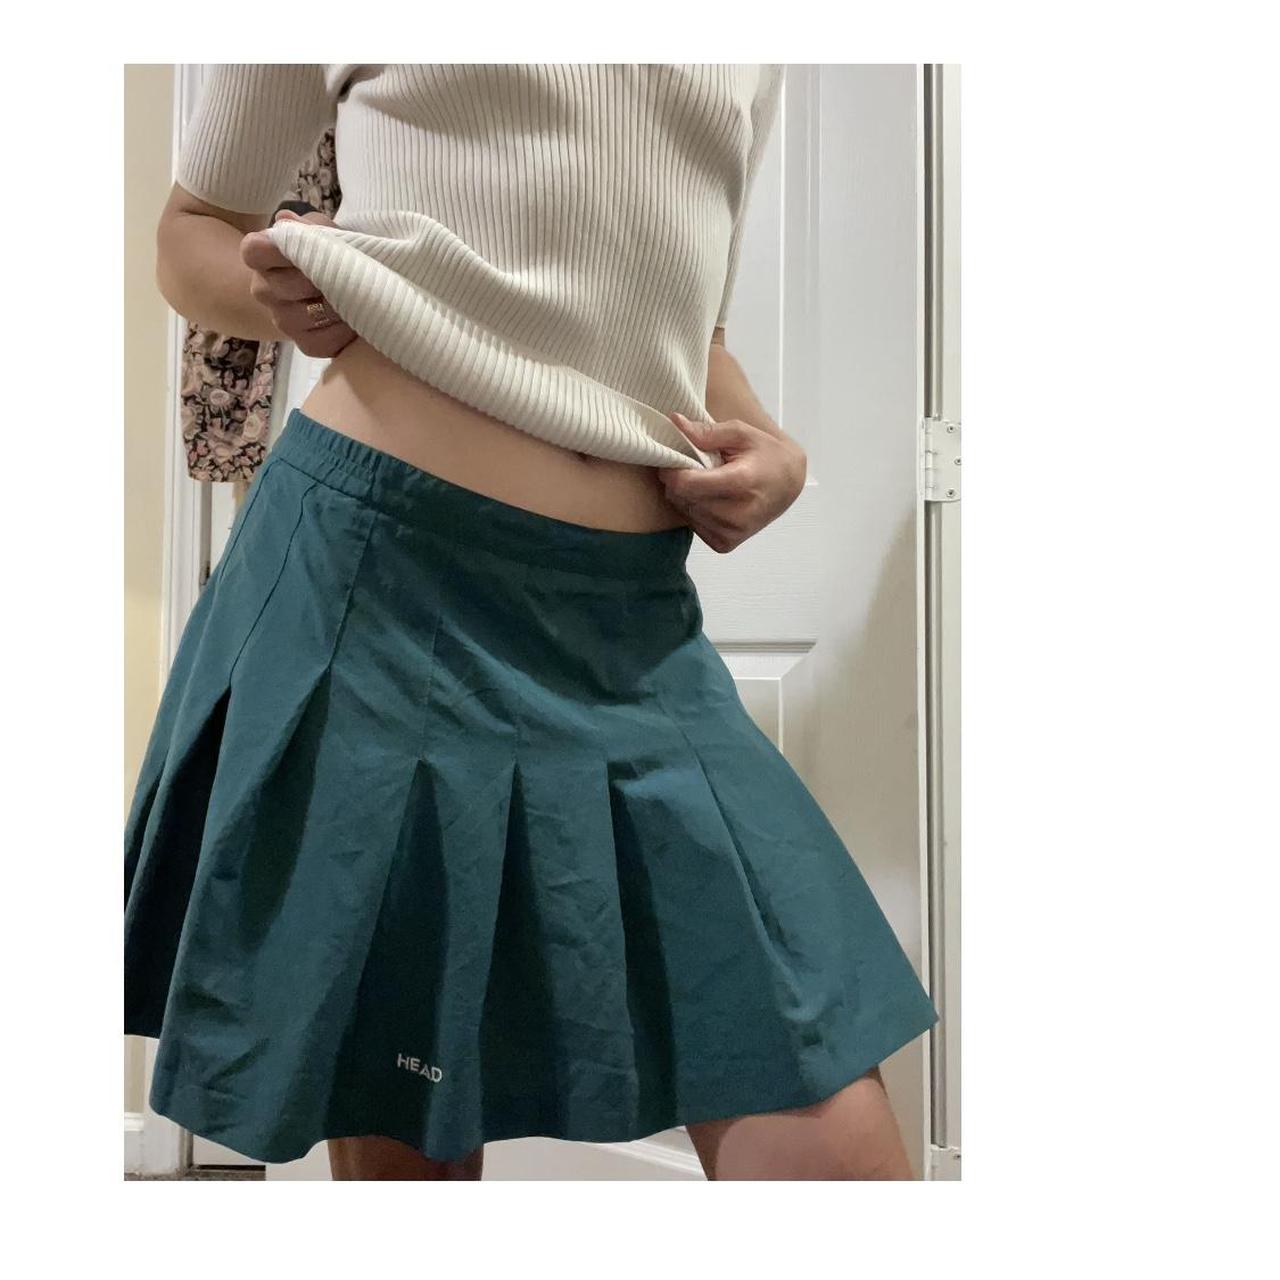 Head Women's Green Skirt | Depop